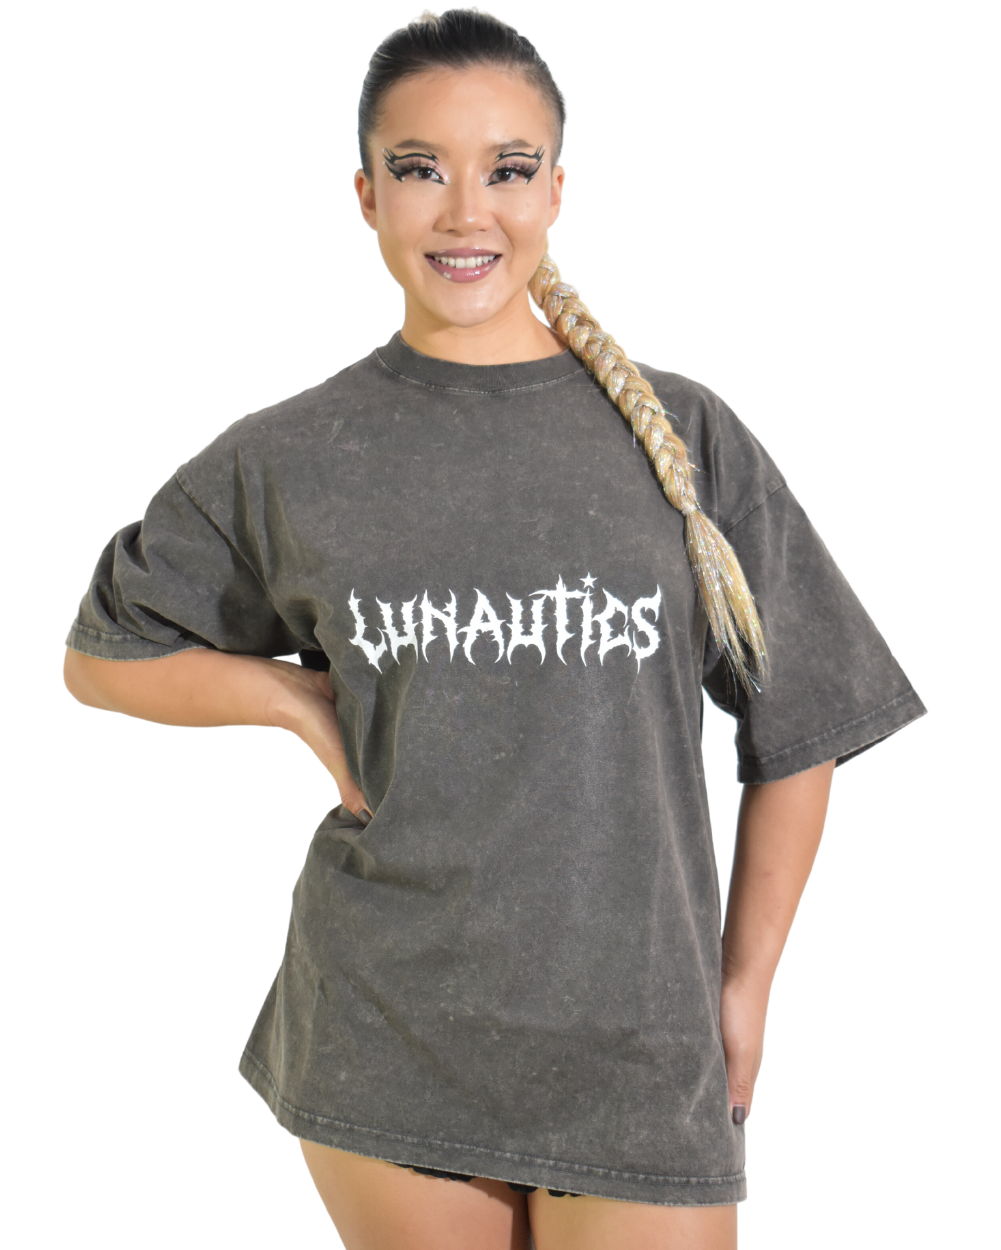 Luna Loca- Lunautics Oversized Vintage Wash T-Shirt - Lunautics